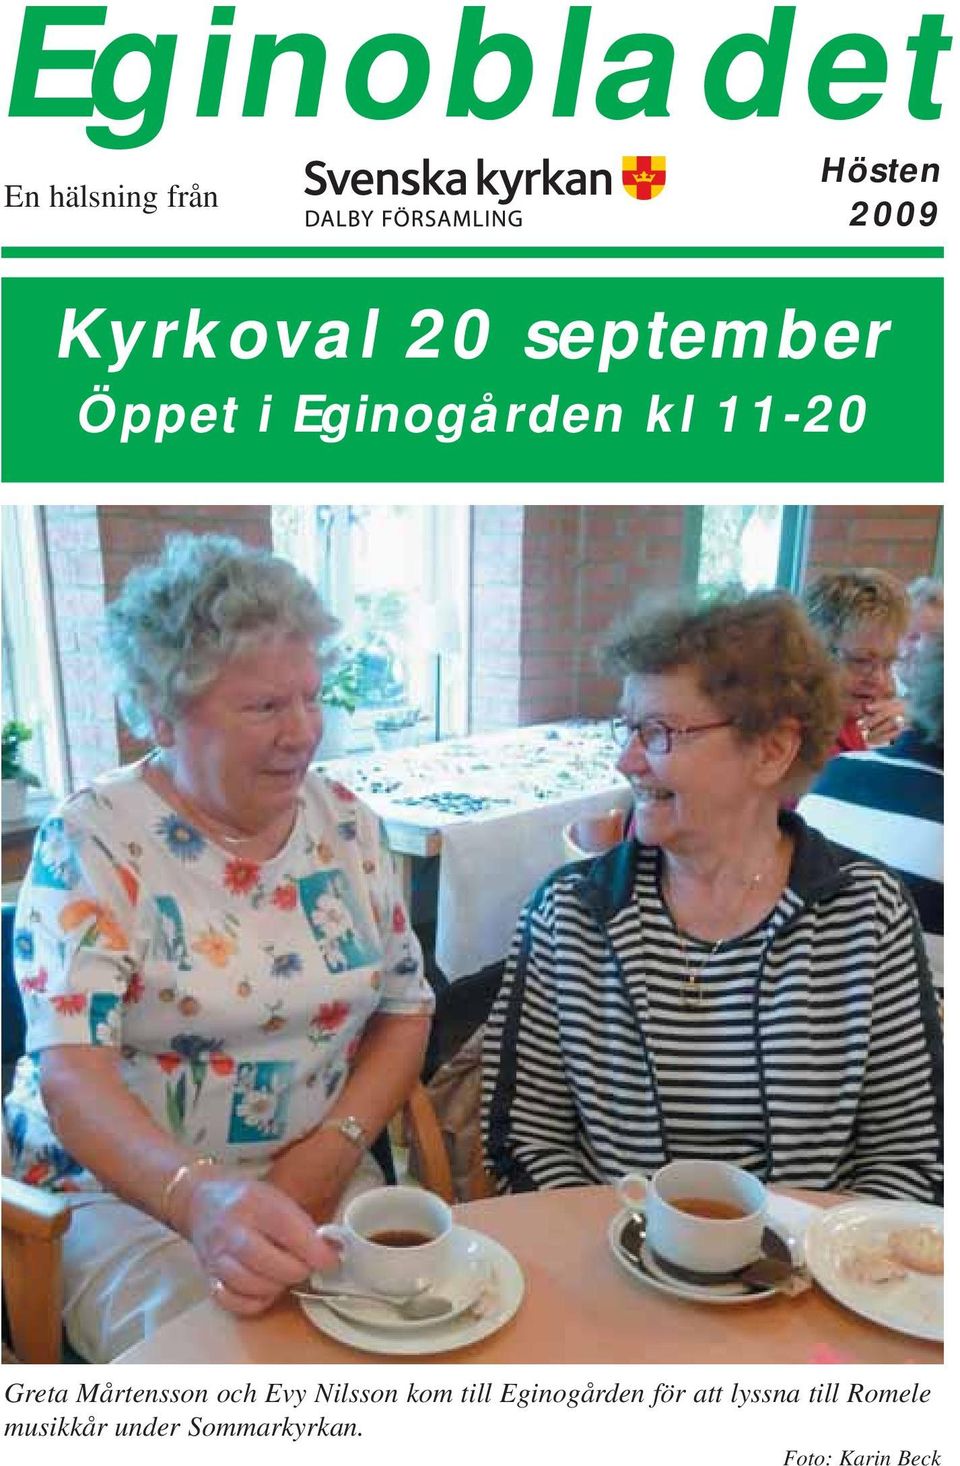 Mårtensson och Evy Nilsson kom till Eginogården för